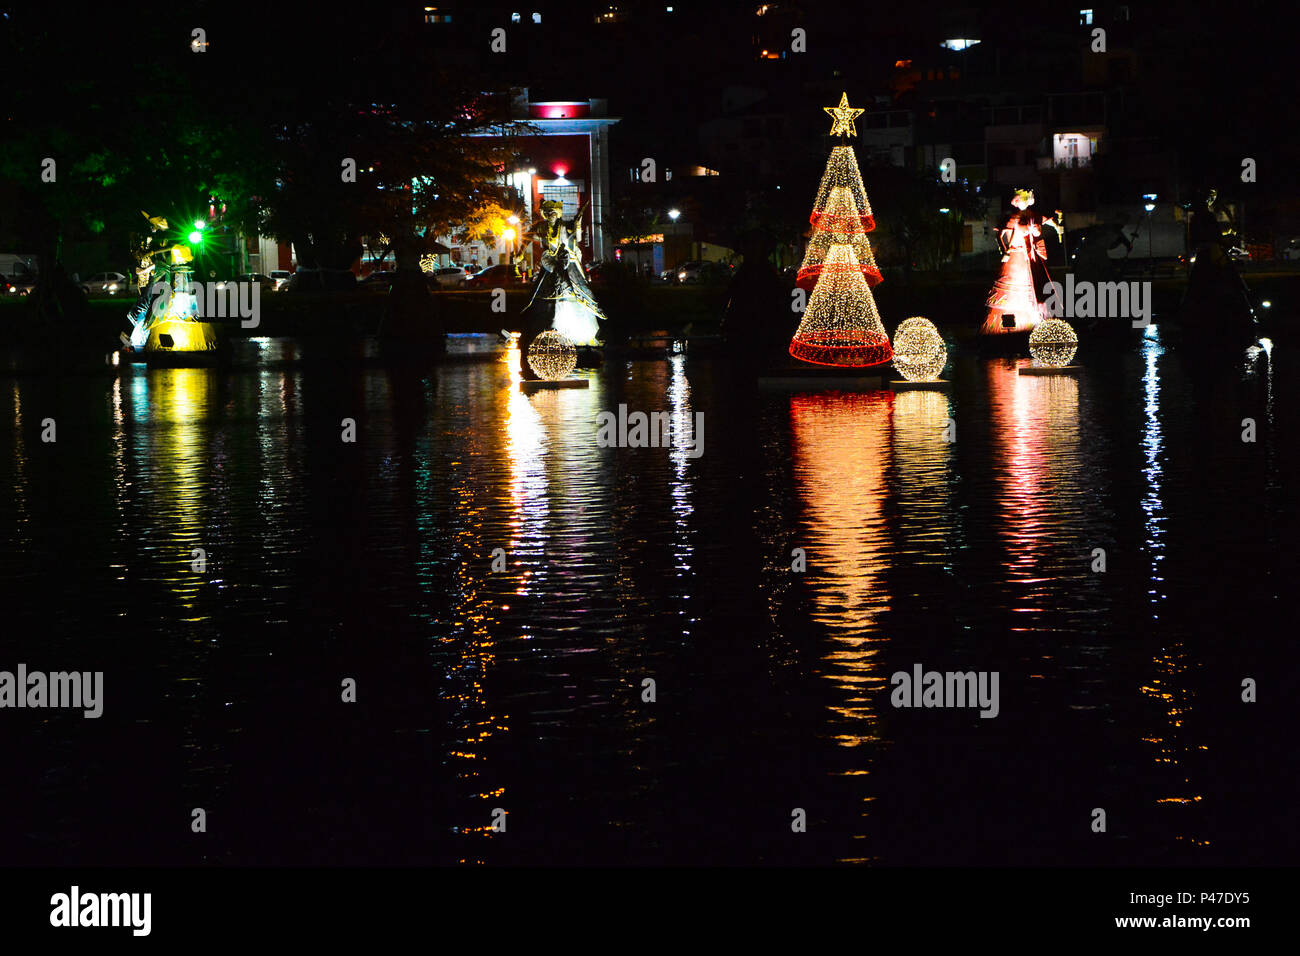 SALVADOR, BA - 09/12/2014: DECORAÇÃO DE NATAL EM SALVADOR - Dique do Tororó, durante Decoração de Natal em Salvador. (Foto: Mauro Akin Nassor / Fotoarena) Stock Photo